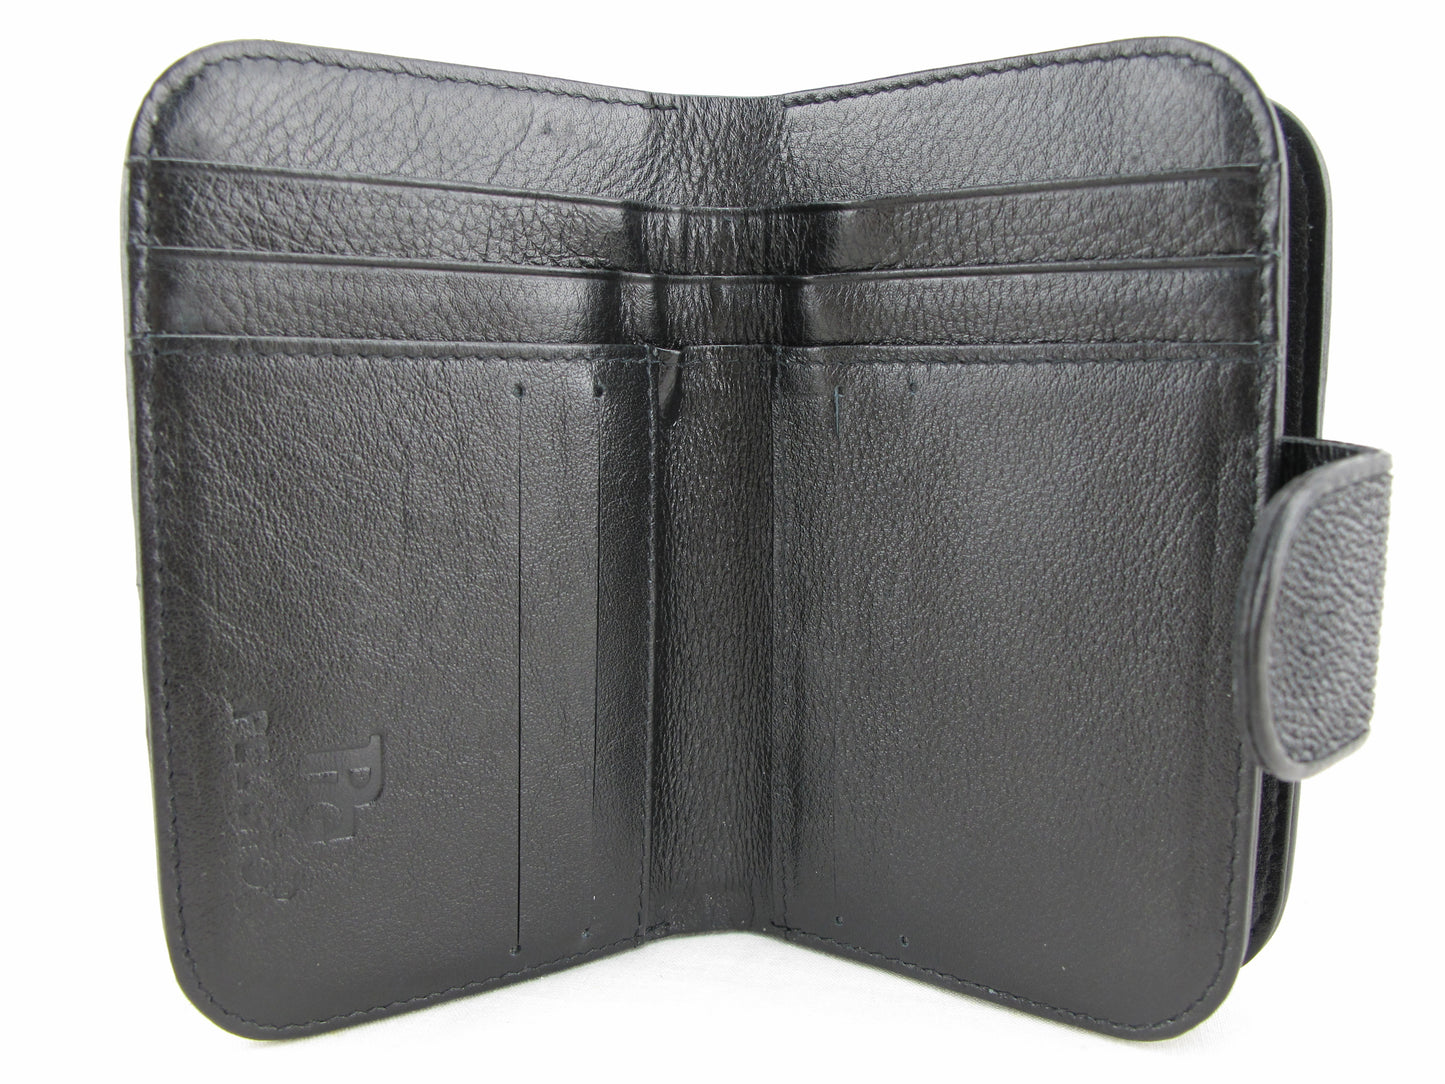 Genuine Stingray Skin Leather Medium Clutch Wallet Zip Coins Purse